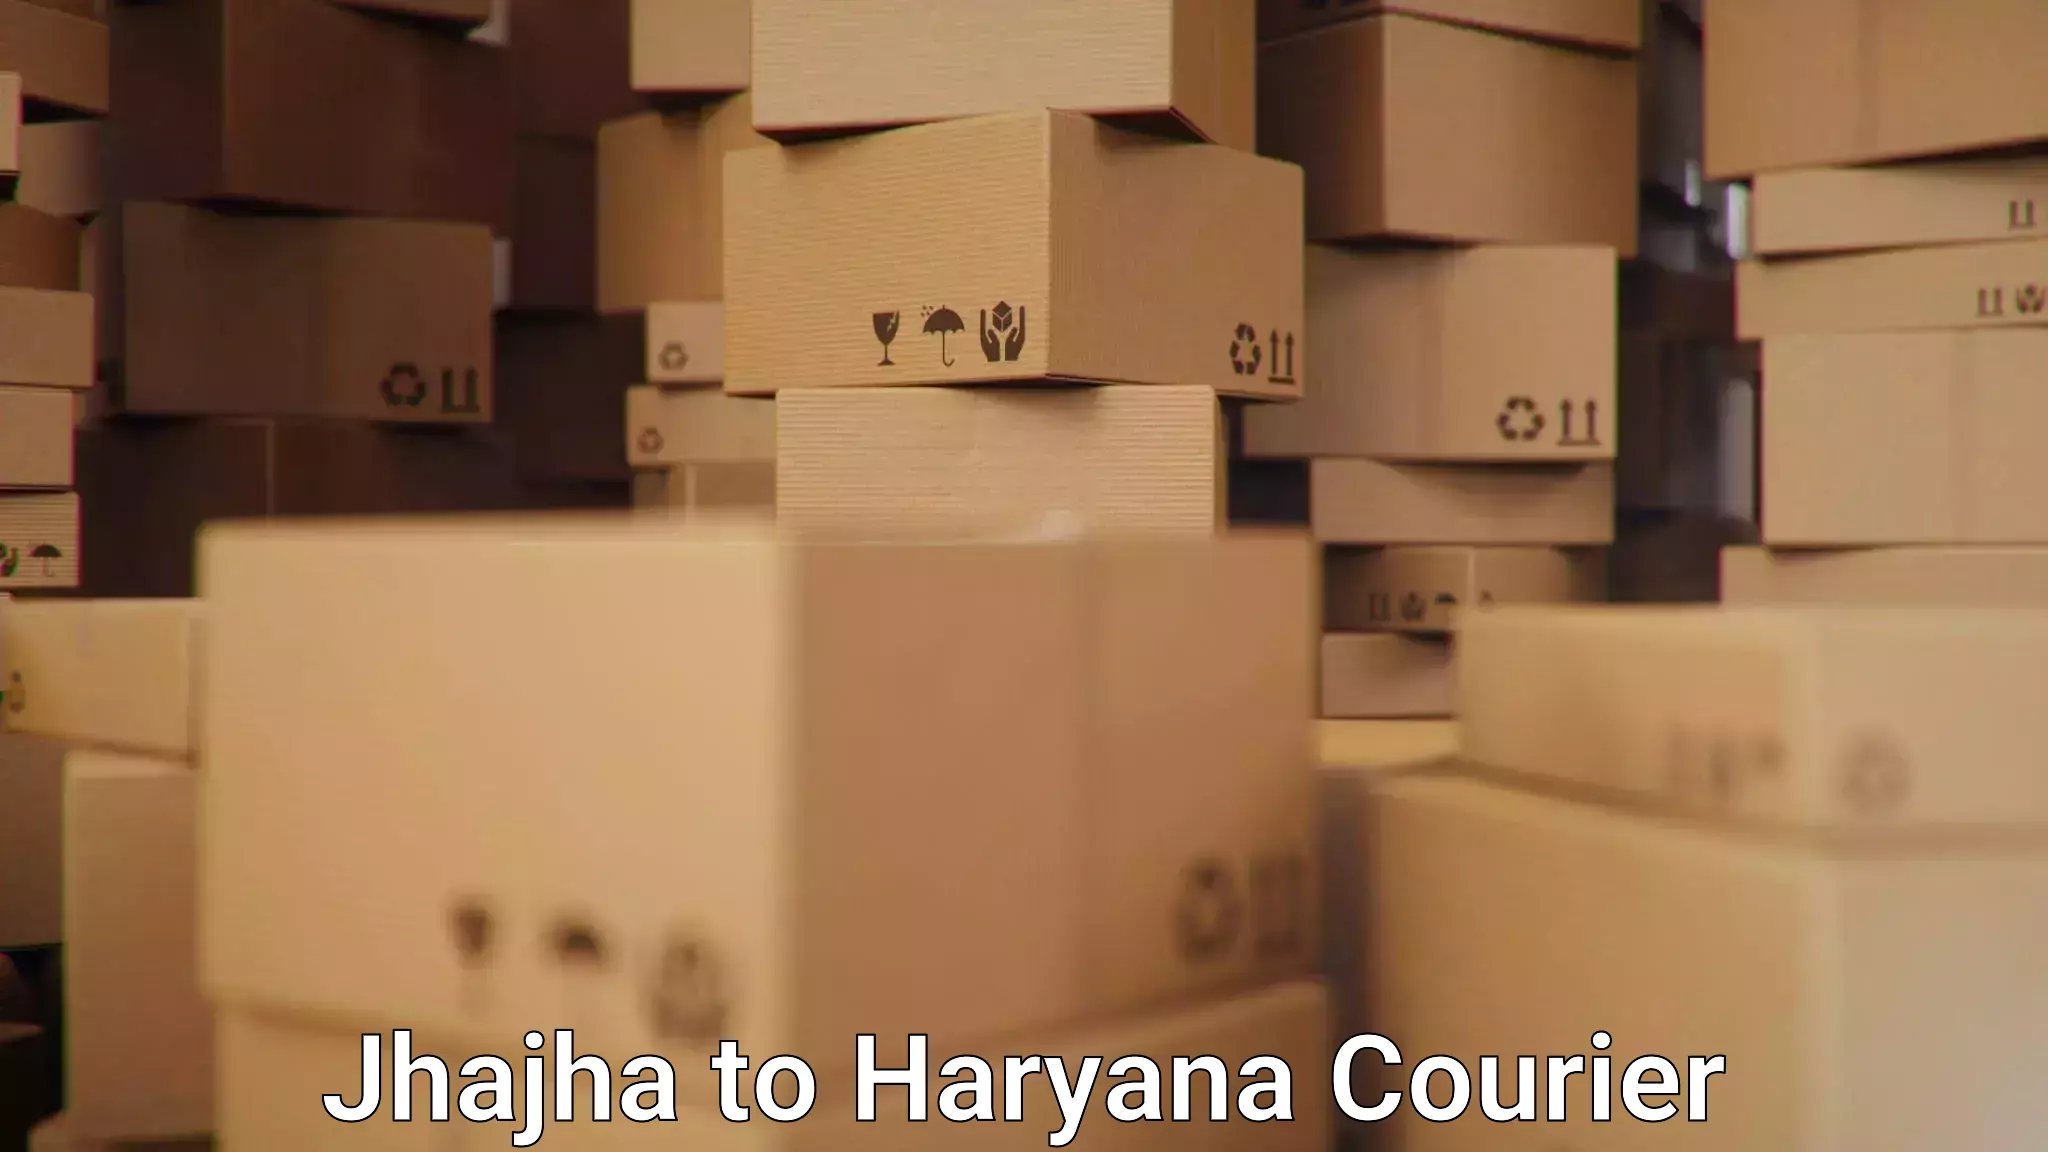 Quick booking process Jhajha to Haryana